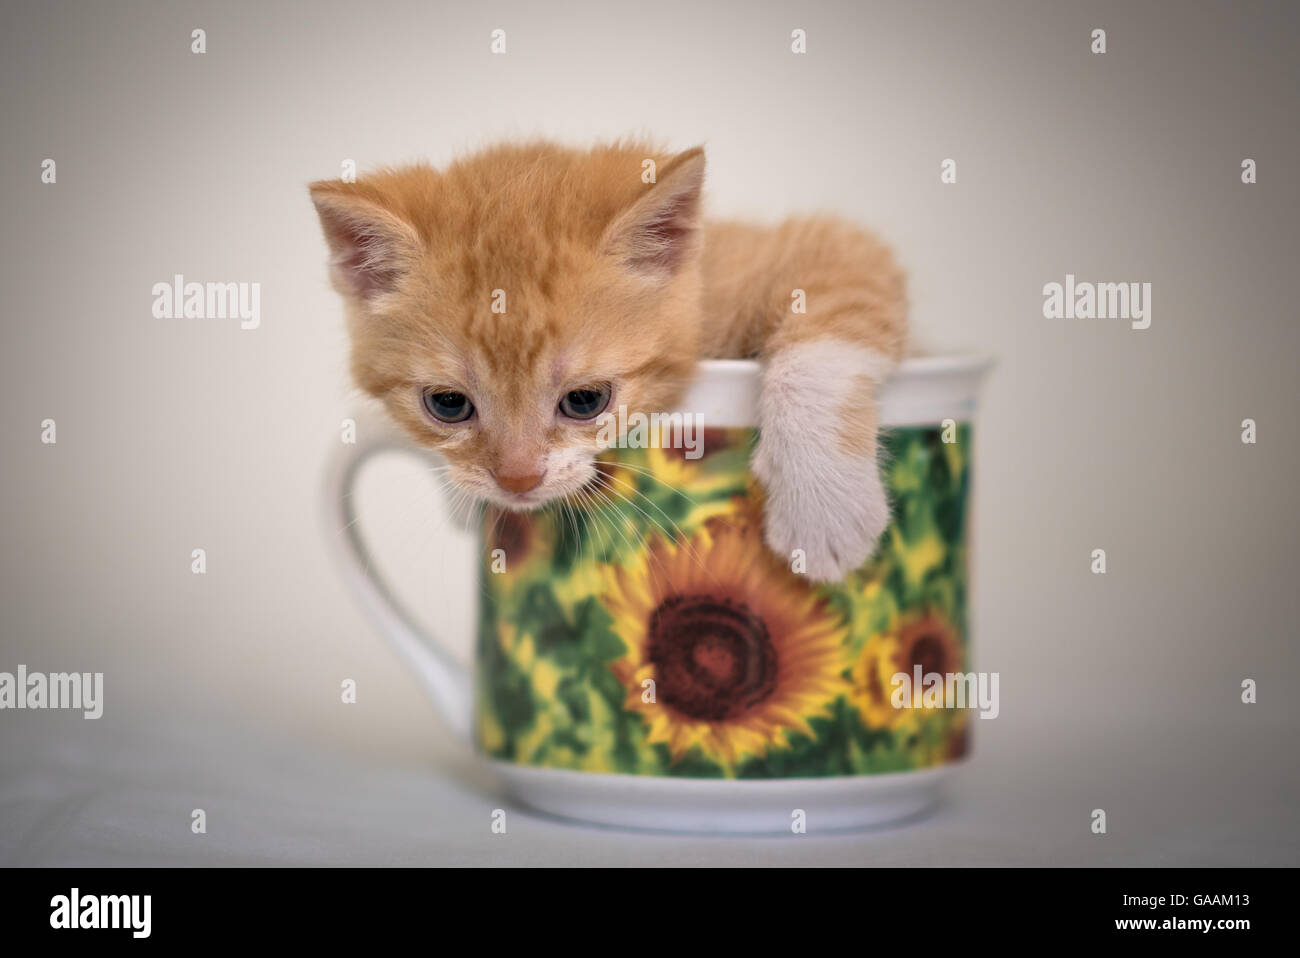 Cute little kitten in cup Stock Photo